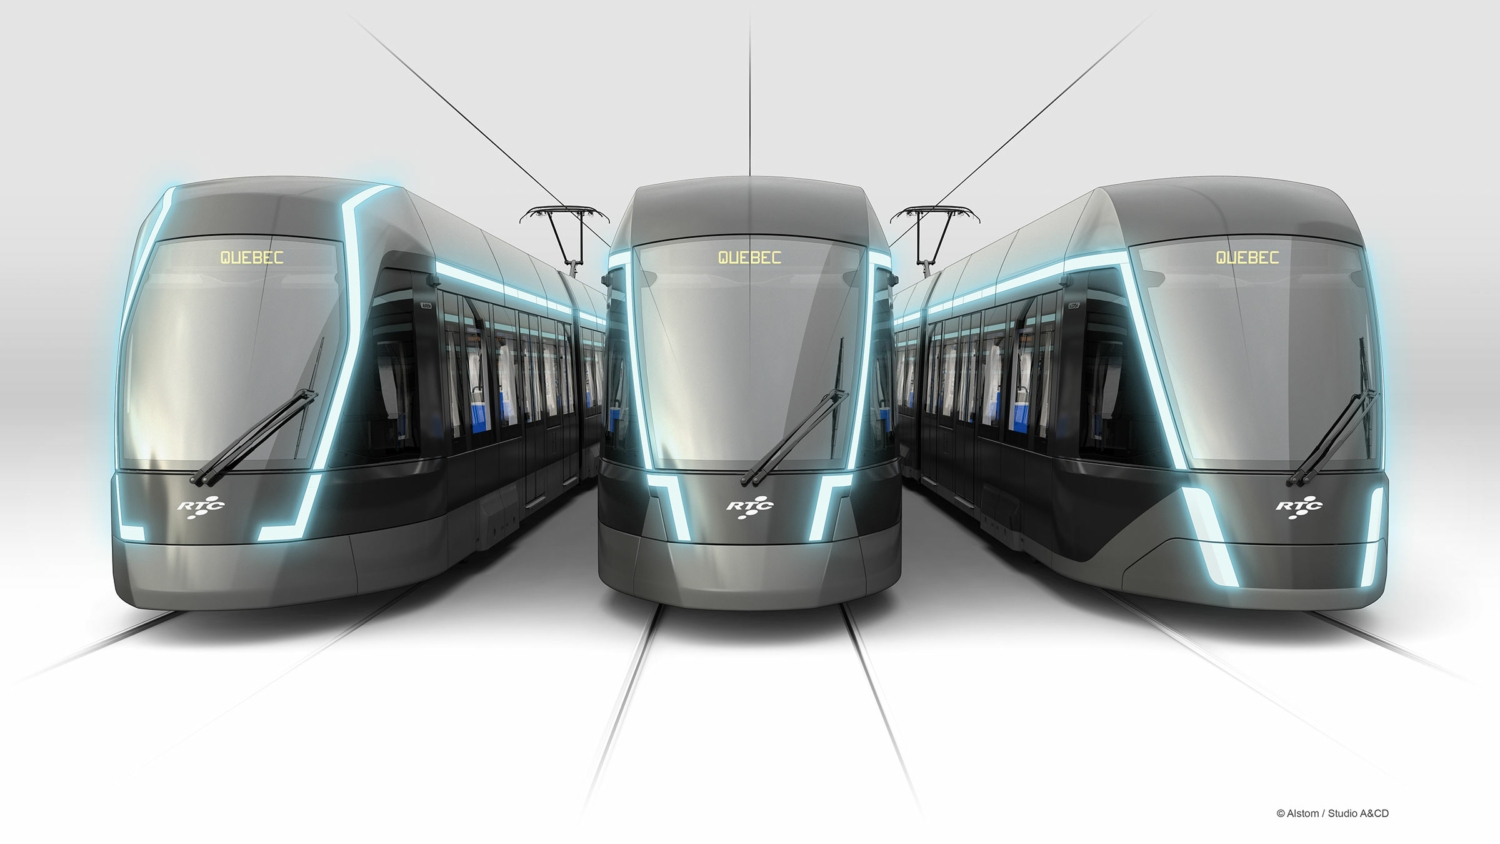 V červnu 2023 Alstom odhalil design nových tramvají pro Québec, jejichž dodání je ale nyní nejisté. Město se musí rozhodnout, jak s projektem pokračovat. (foto: Alstom)